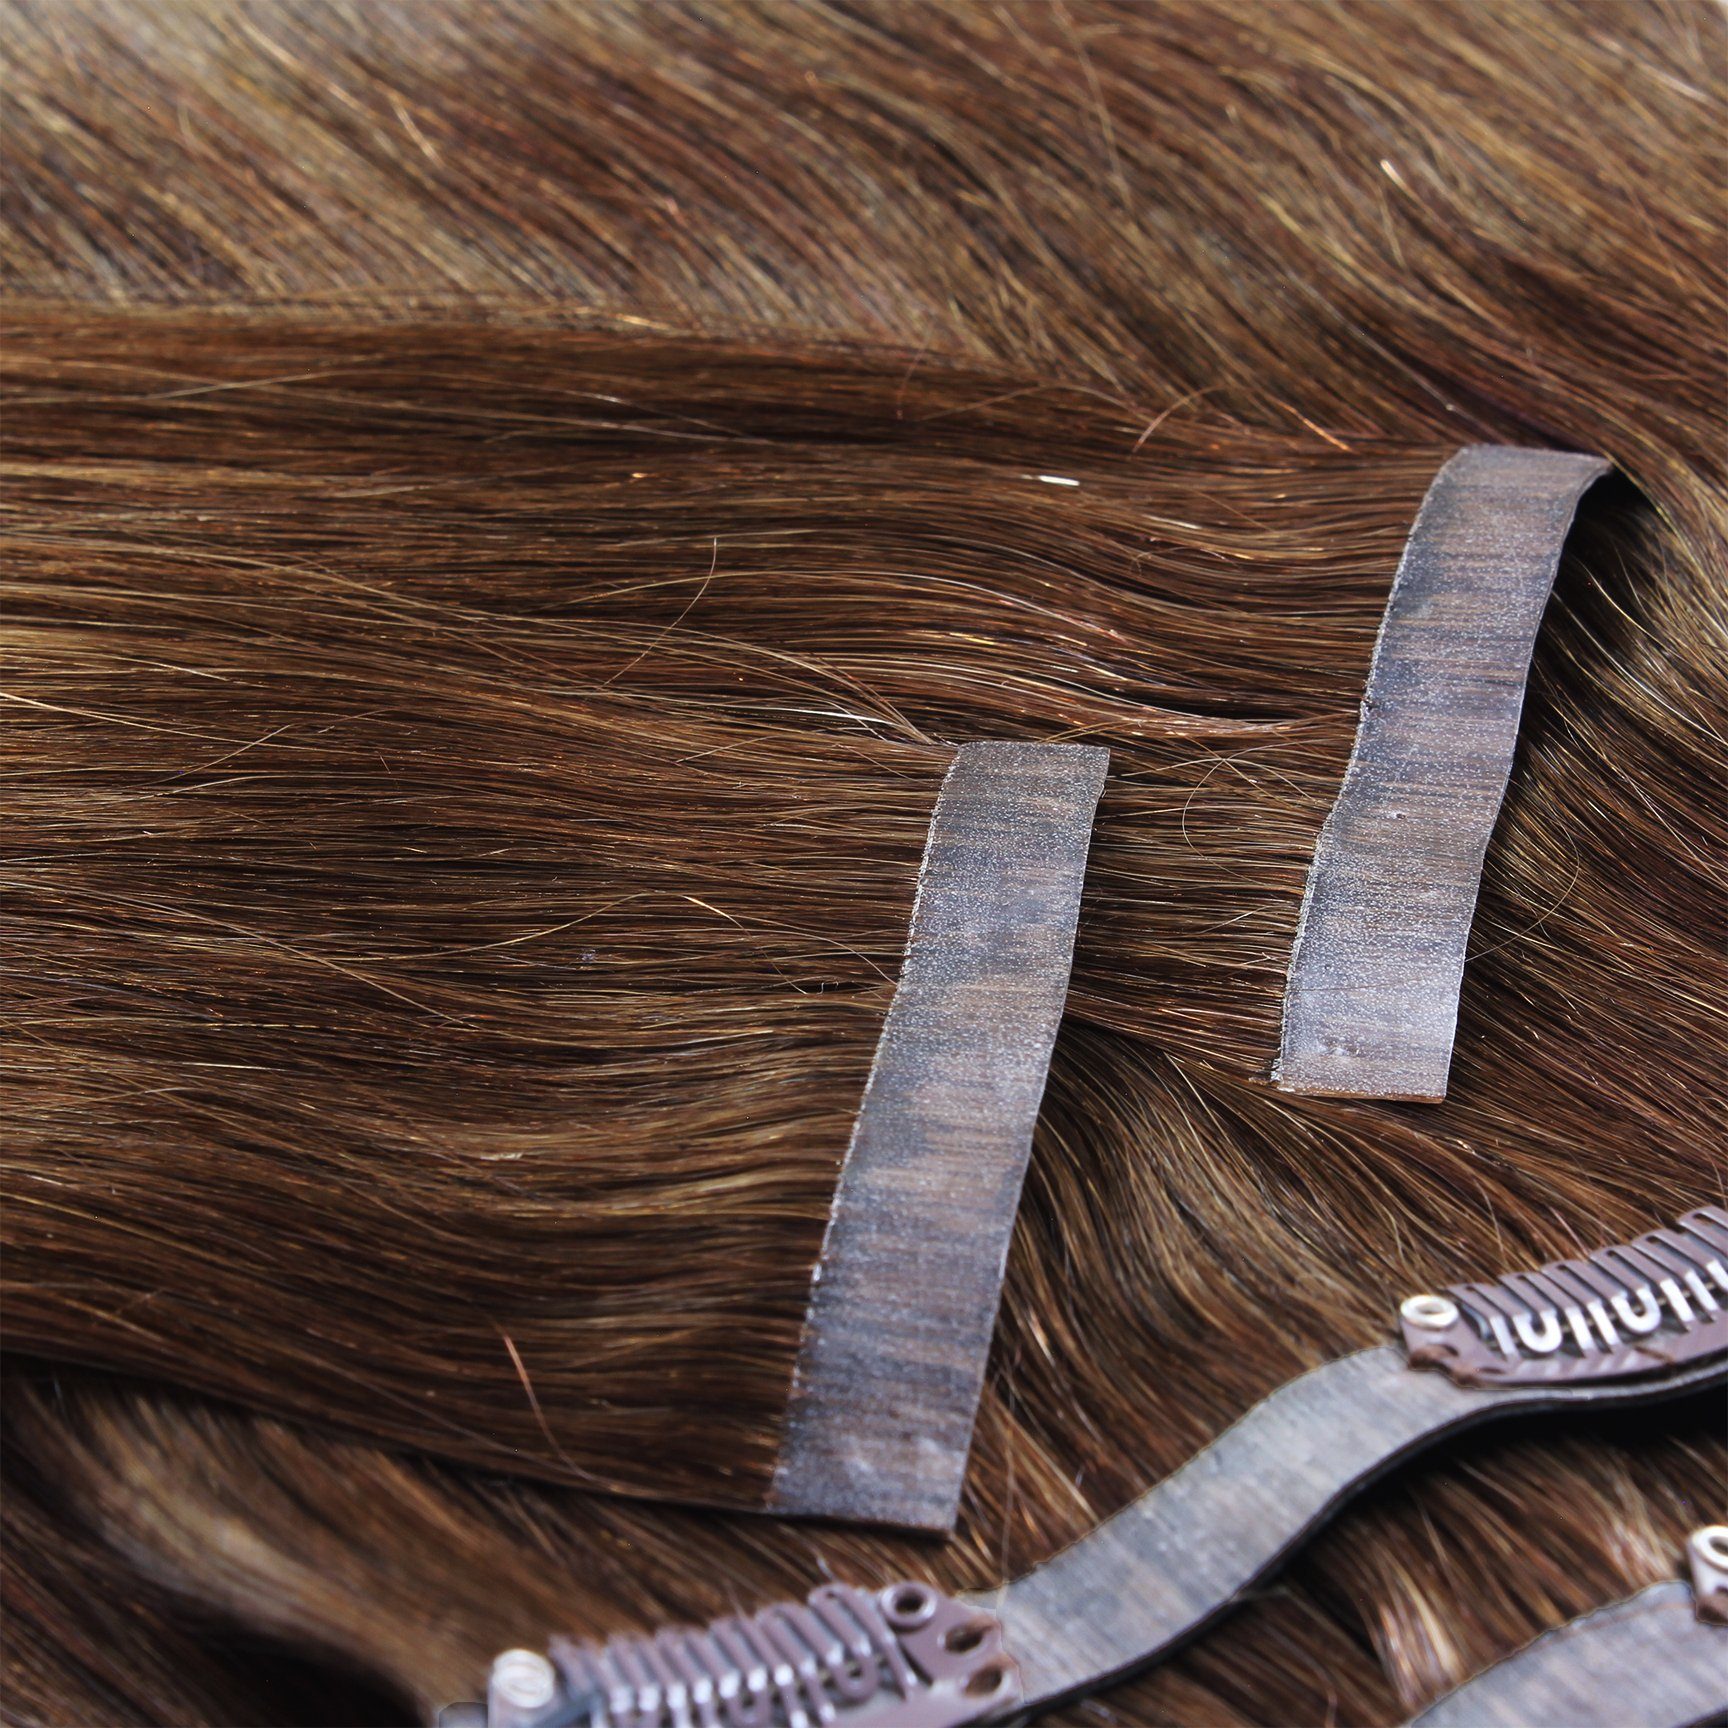 Seamless hair2heart 40cm Clip Gold Dunkelblond #6/3 Extensions Echthaar-Extension